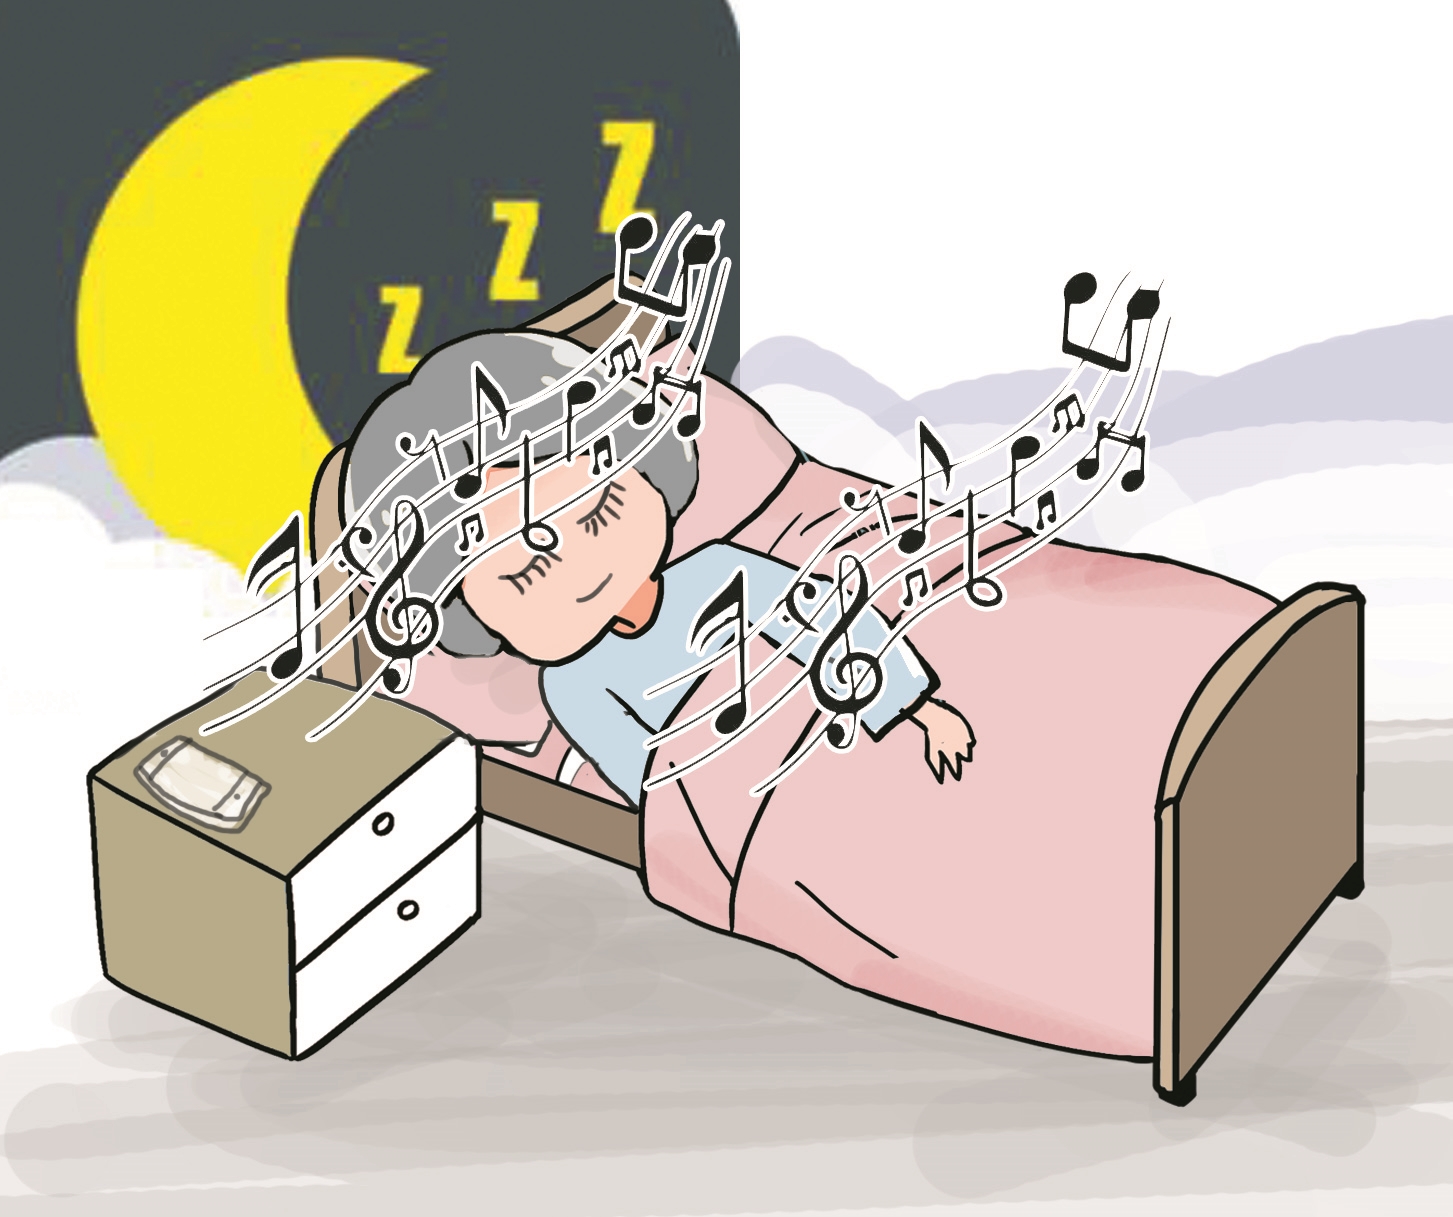 睡眠不好的你,有听过白噪音吗 专家表示白噪音虽可助眠但使用需有度